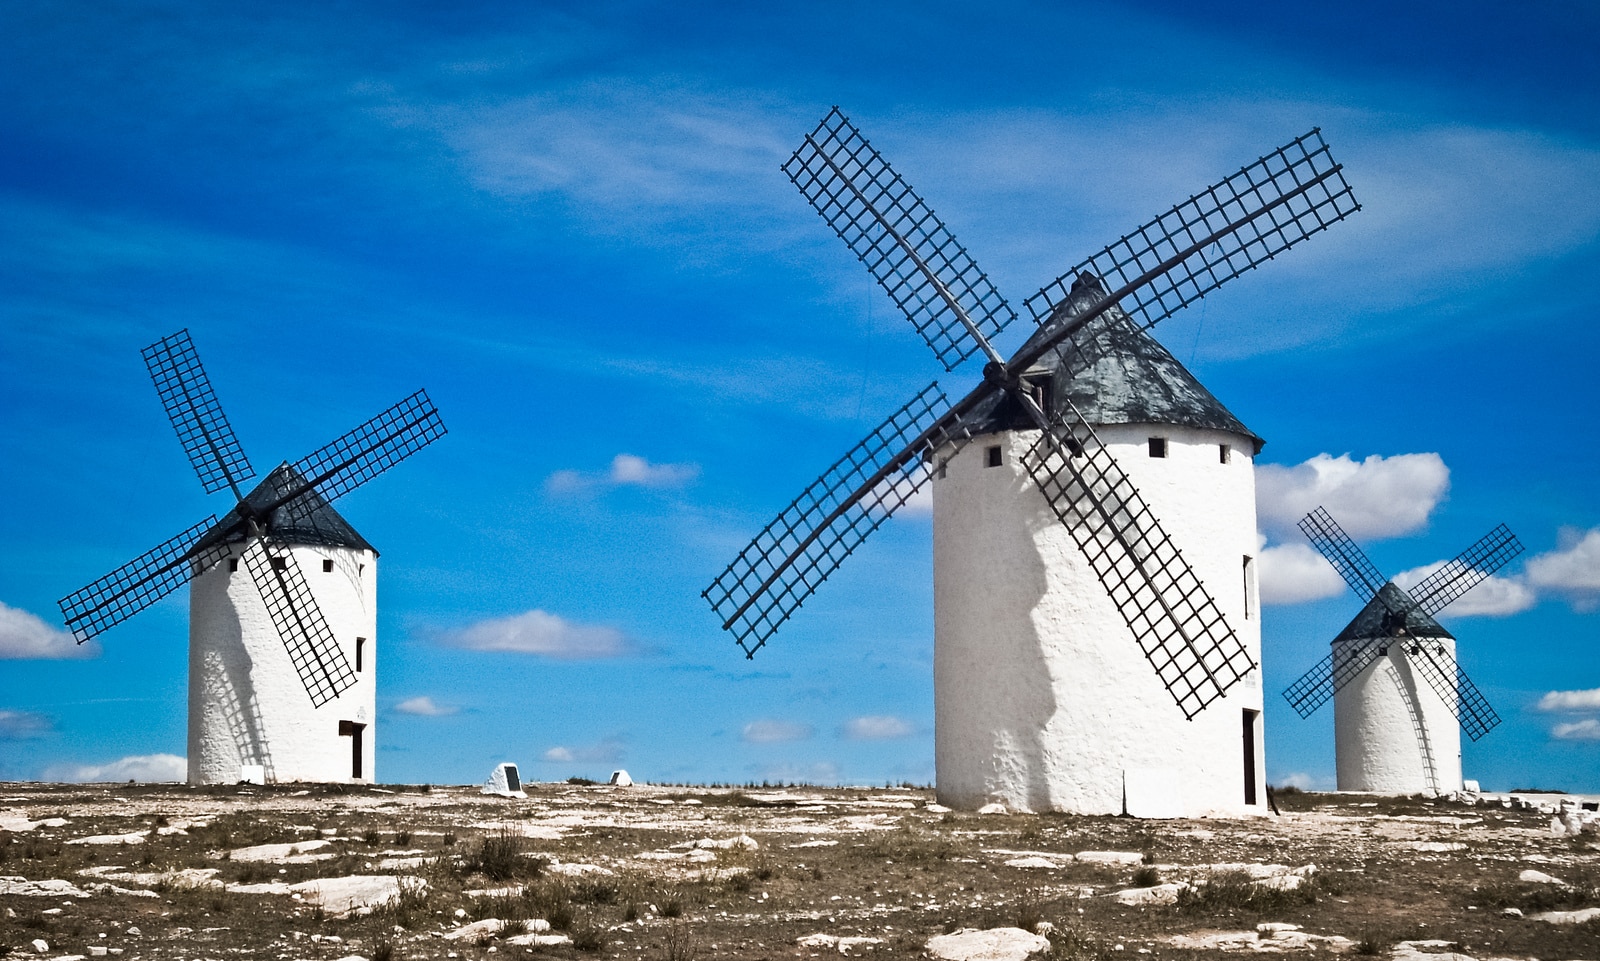 Fotografía de los molinos de Don Quijote de La Mancha de Maria Grazia Montagnari via Foter.com / CC BY